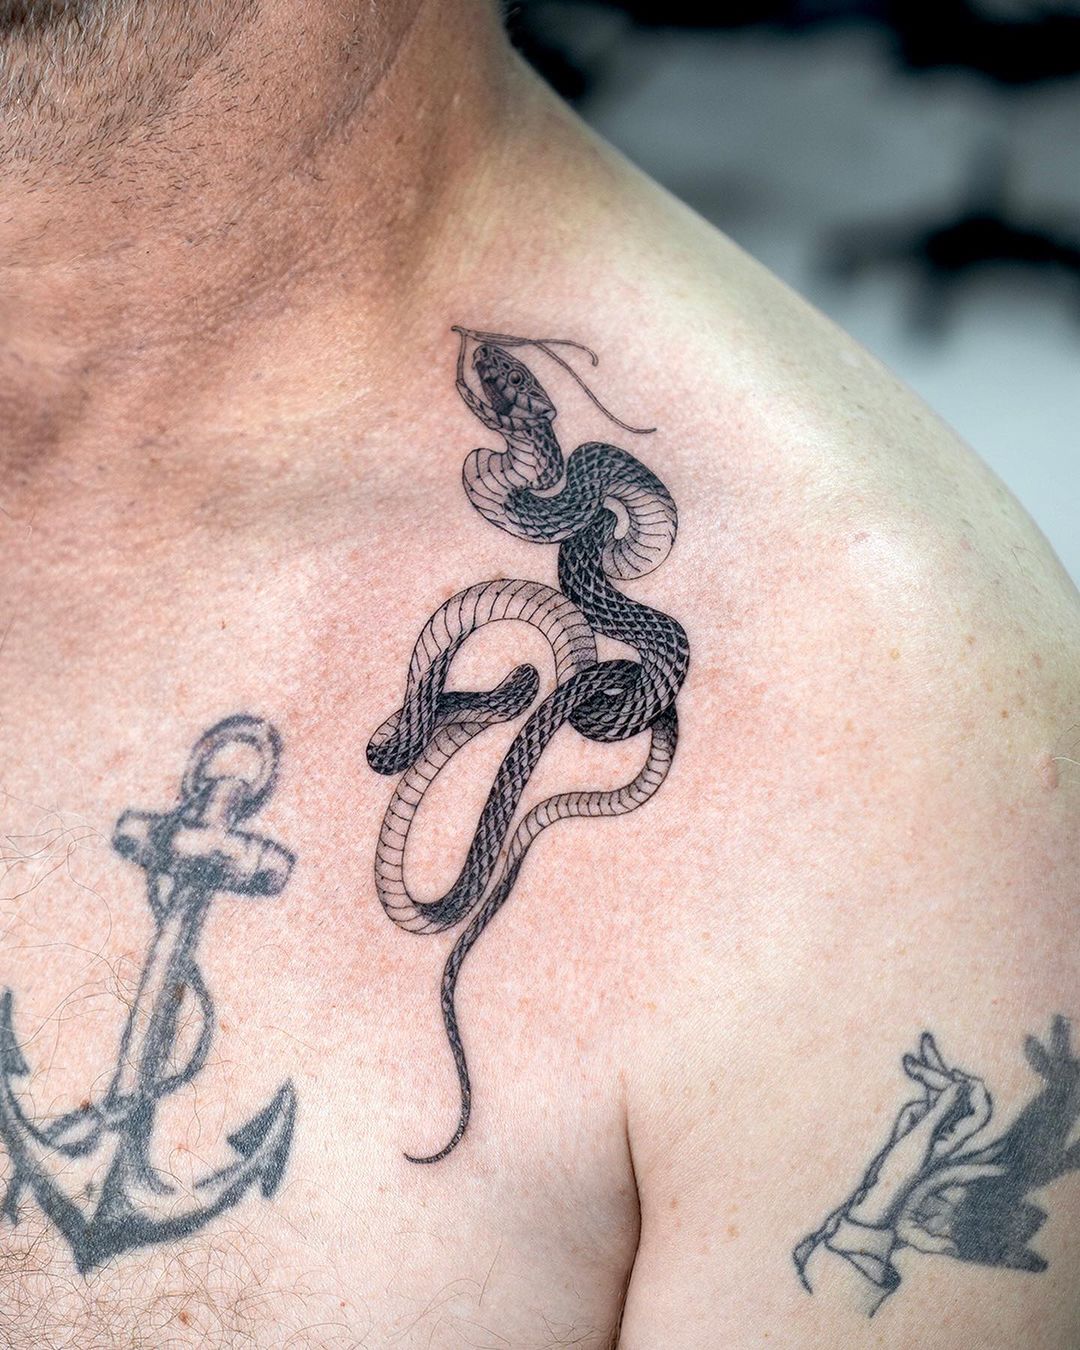 Snake tattoo on shoulder by gemil grim